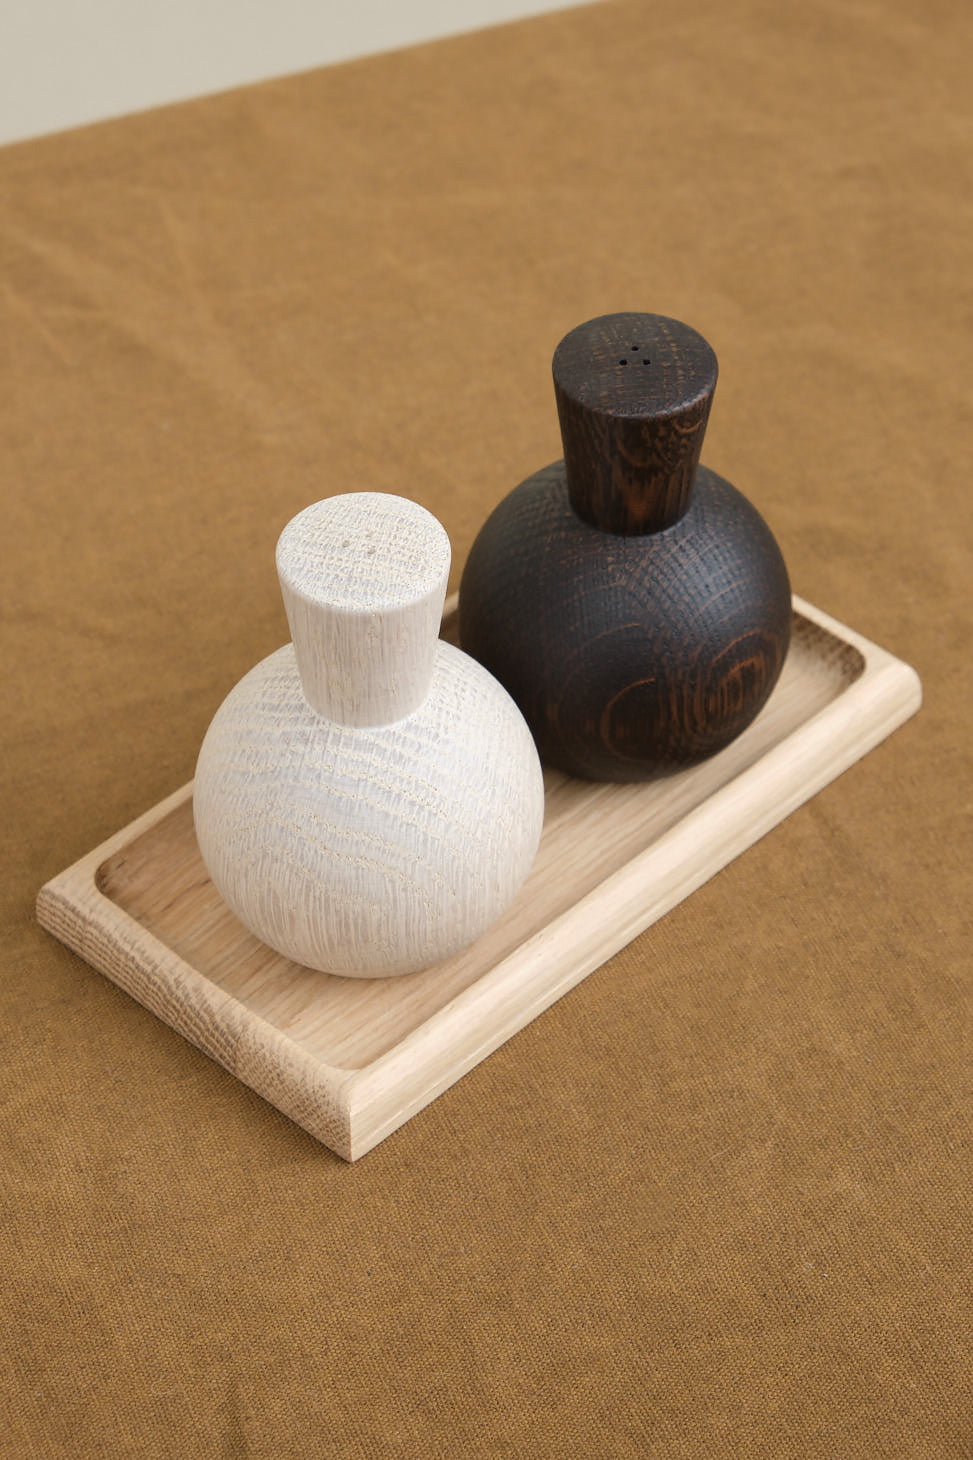 Stoneware Salt & Pepper Shaker Set